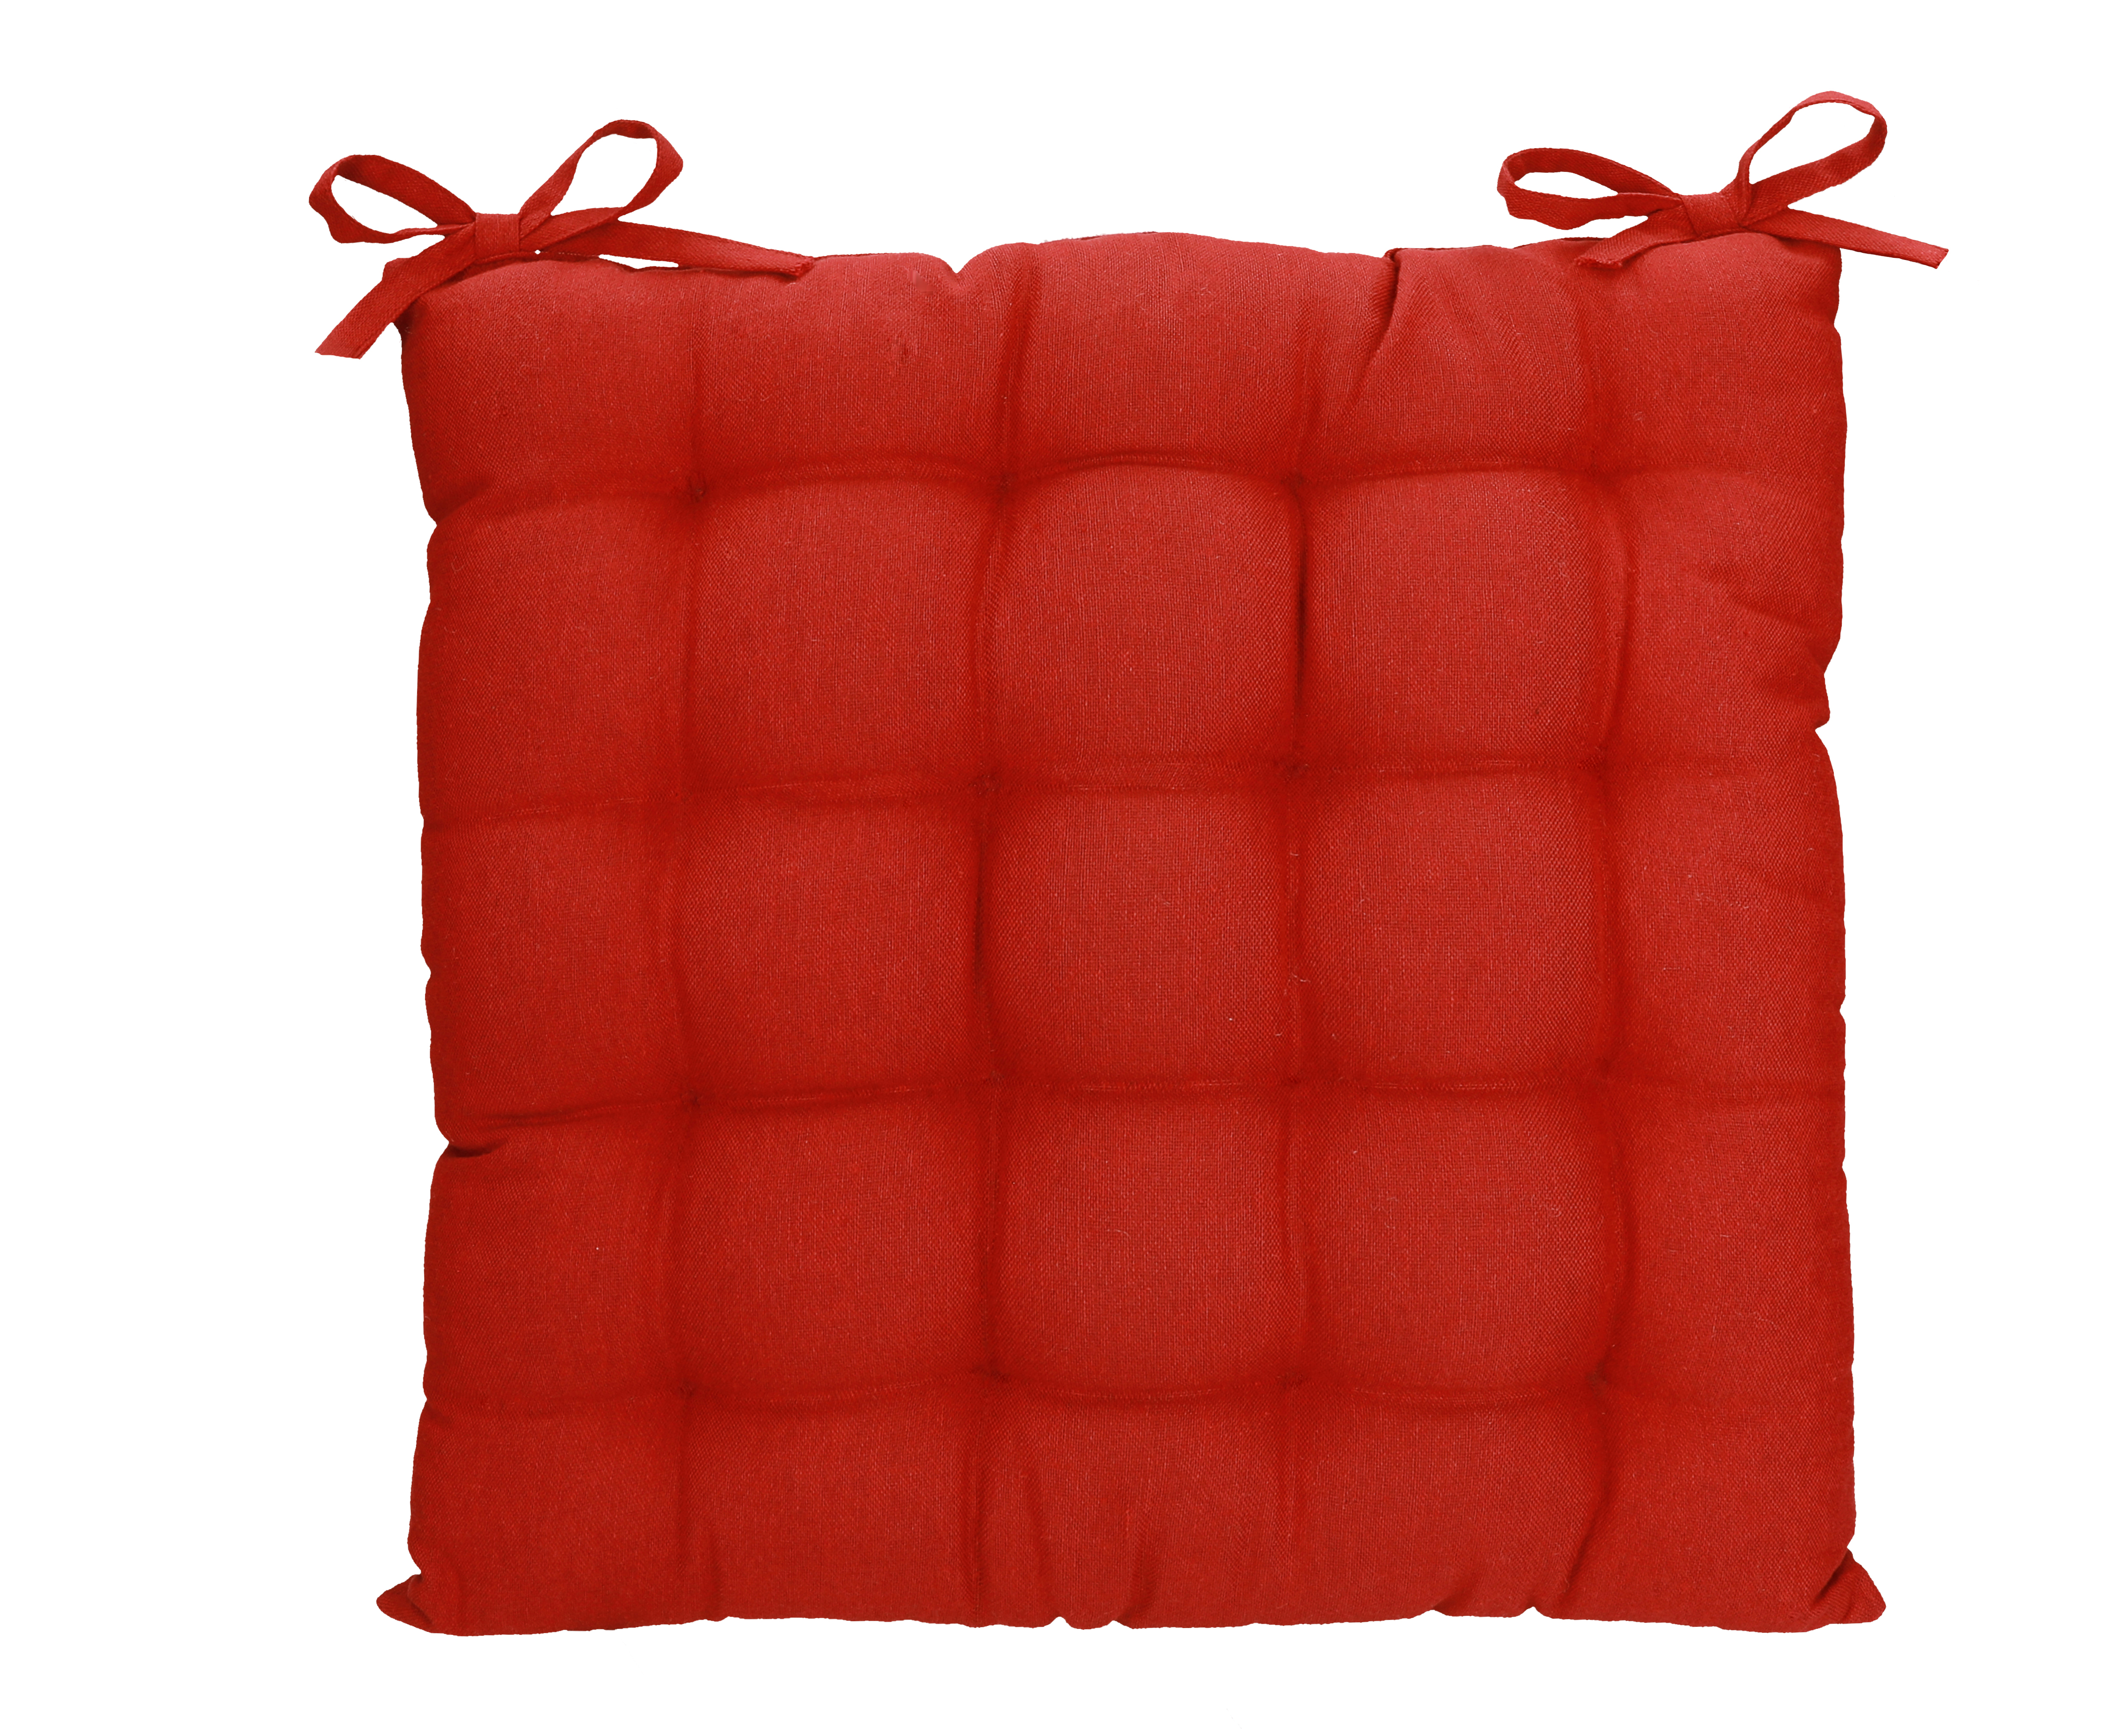 Betz Stuhlkissen mit Bändern - Sitzkissen für Außen oder Innen